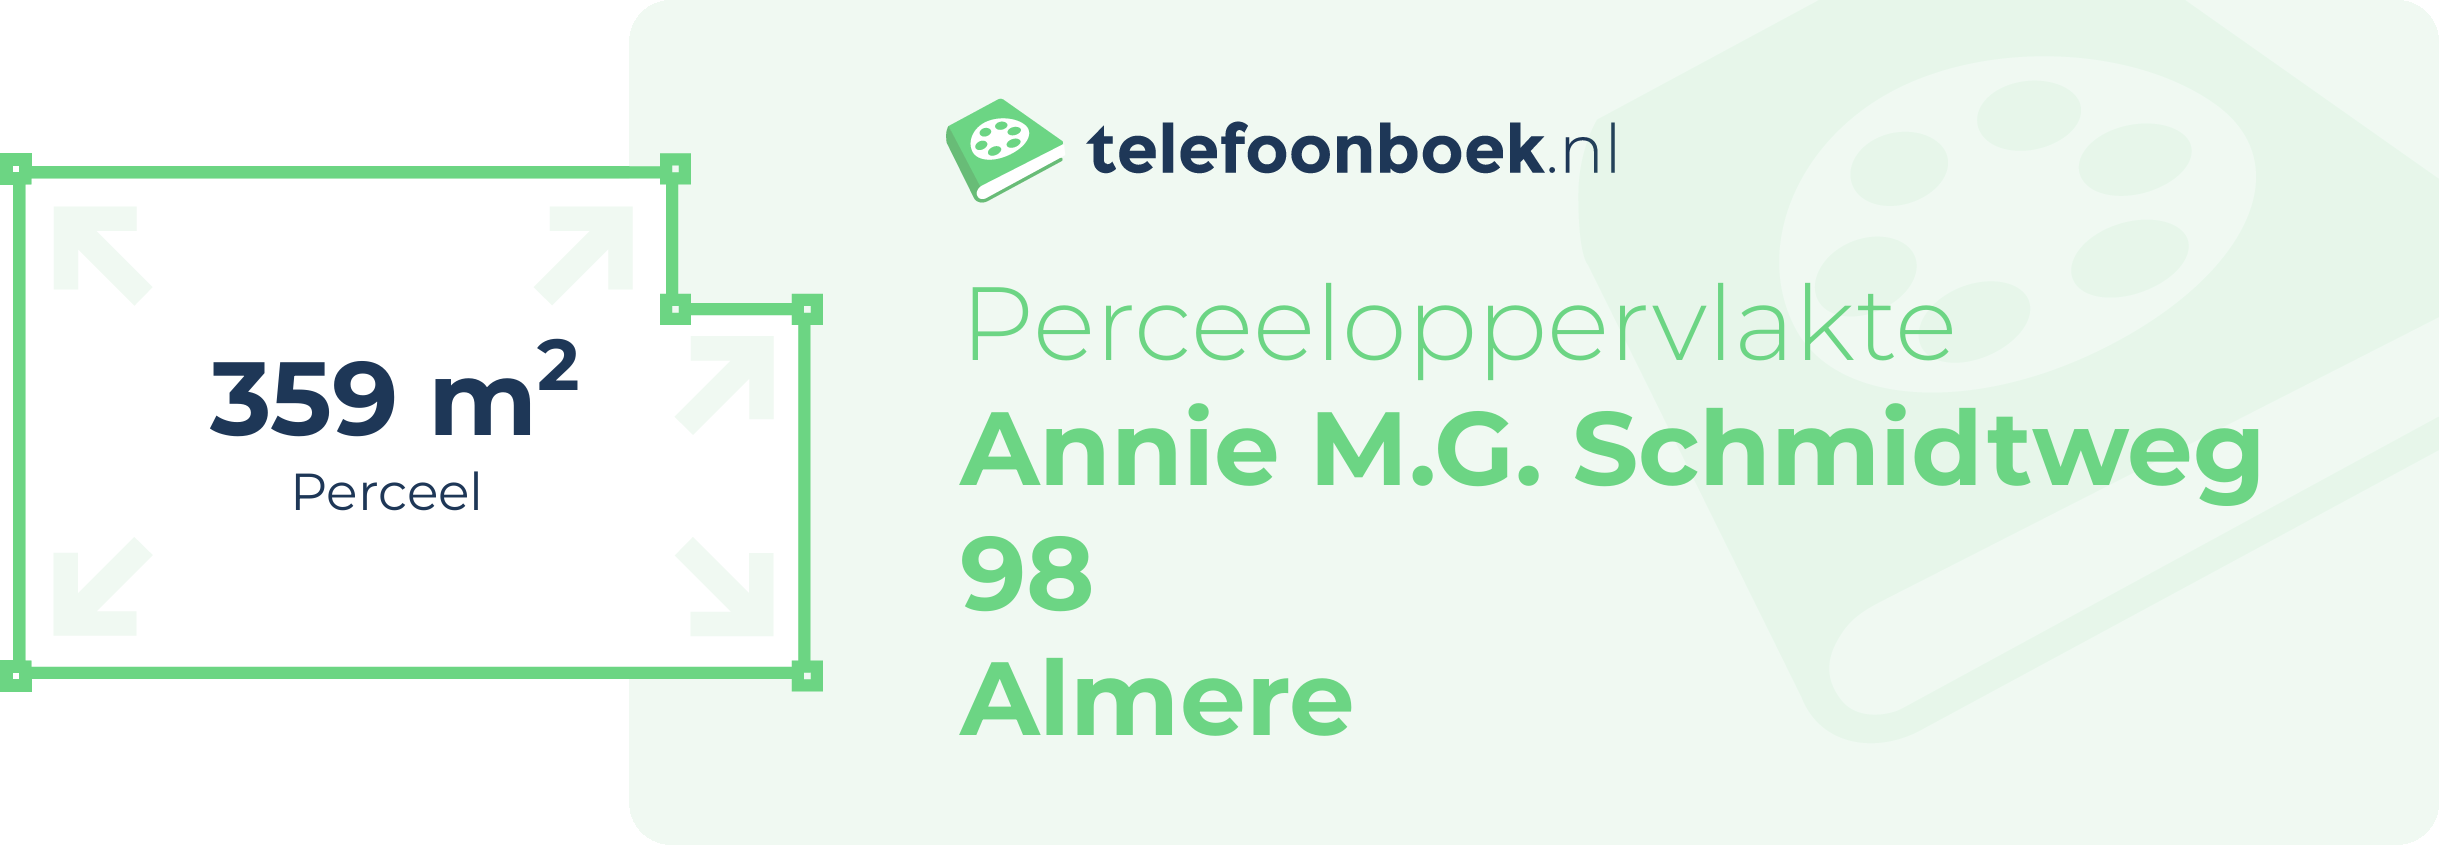 Perceeloppervlakte Annie M.G. Schmidtweg 98 Almere